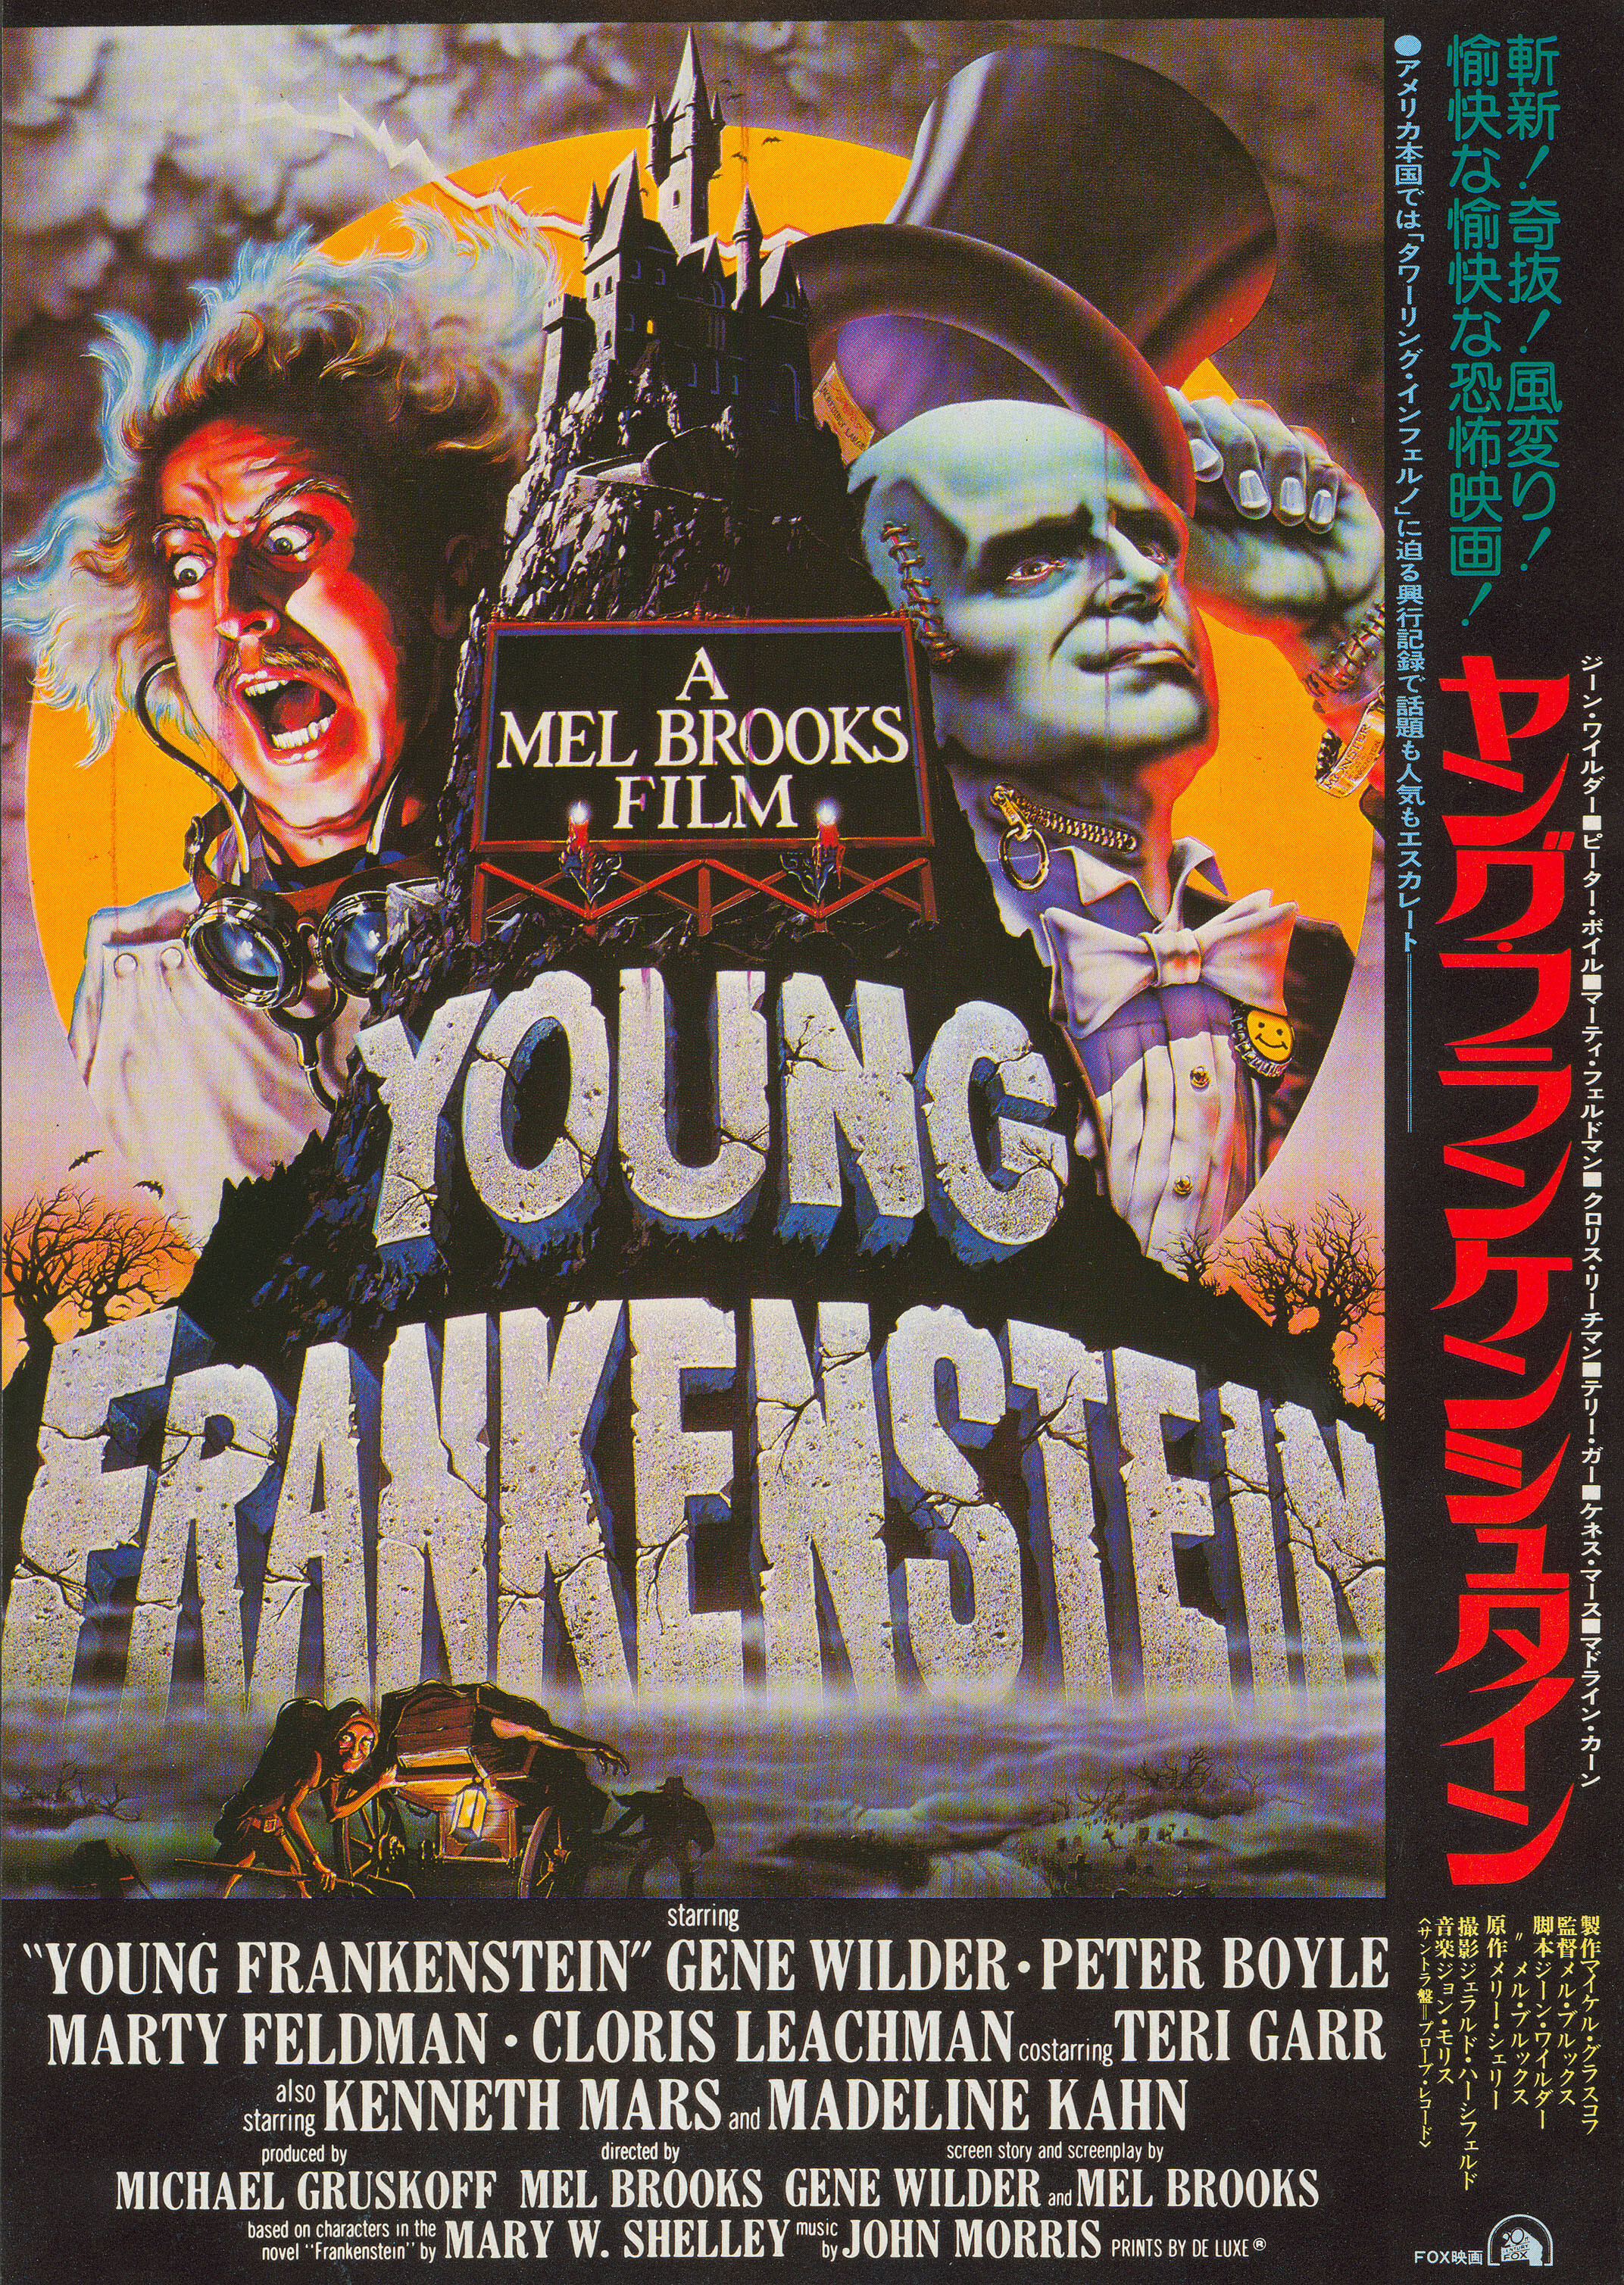 Молодой Франкенштейн (Young Frankenstein, 1974), режиссёр Мэл Брукс, японский постер к фильму (ужасы, 1975 год)